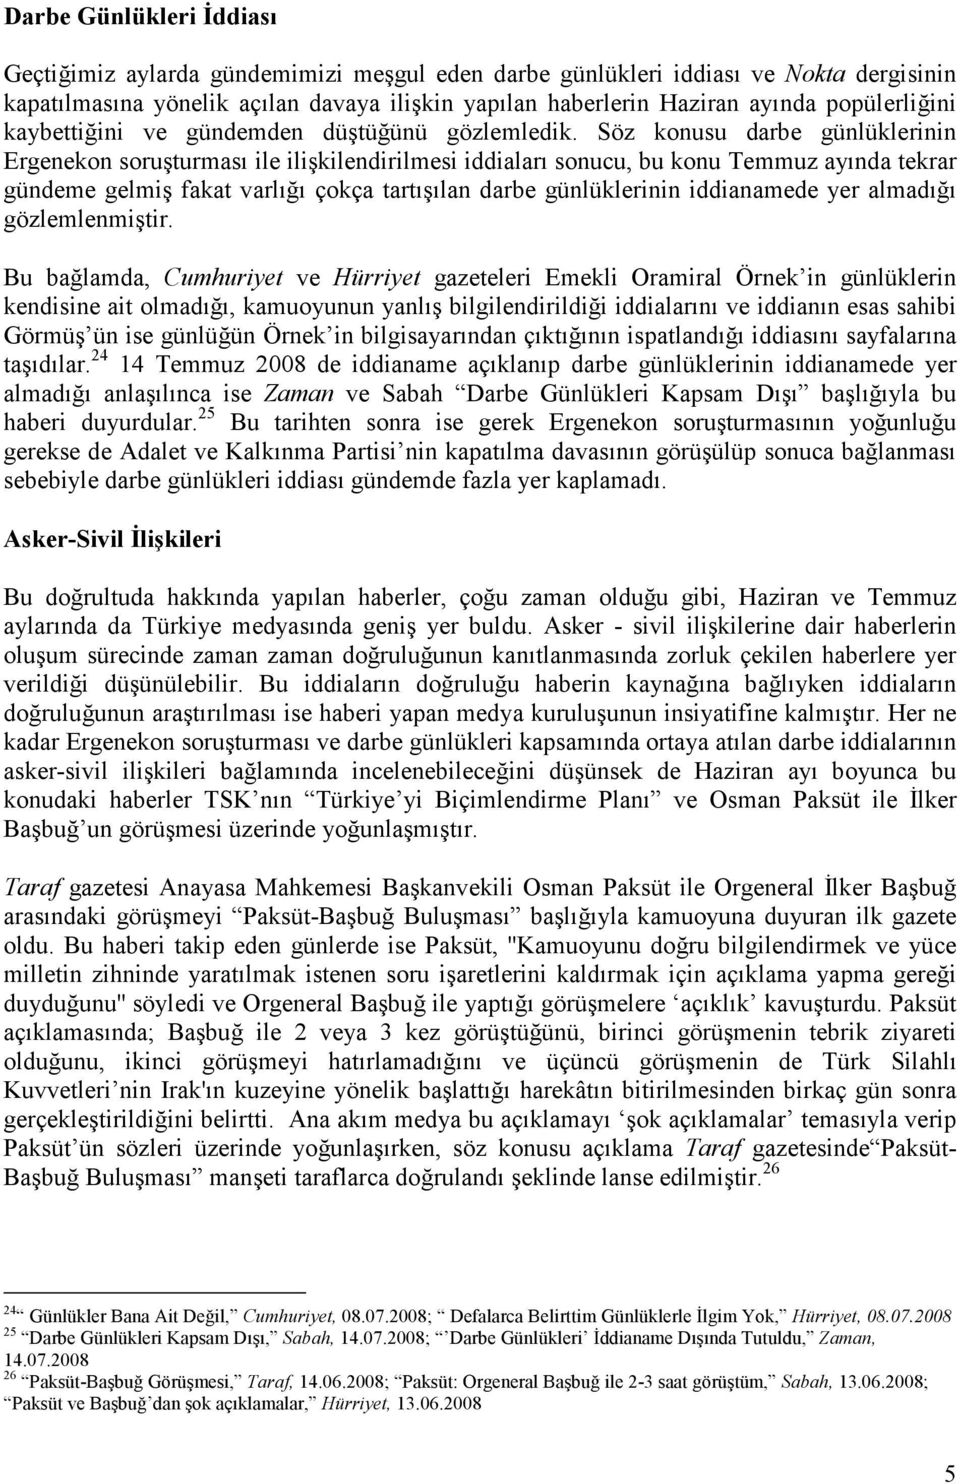 Söz konusu darbe günlüklerinin Ergenekon soruşturması ile ilişkilendirilmesi iddiaları sonucu, bu konu Temmuz ayında tekrar gündeme gelmiş fakat varlığı çokça tartışılan darbe günlüklerinin